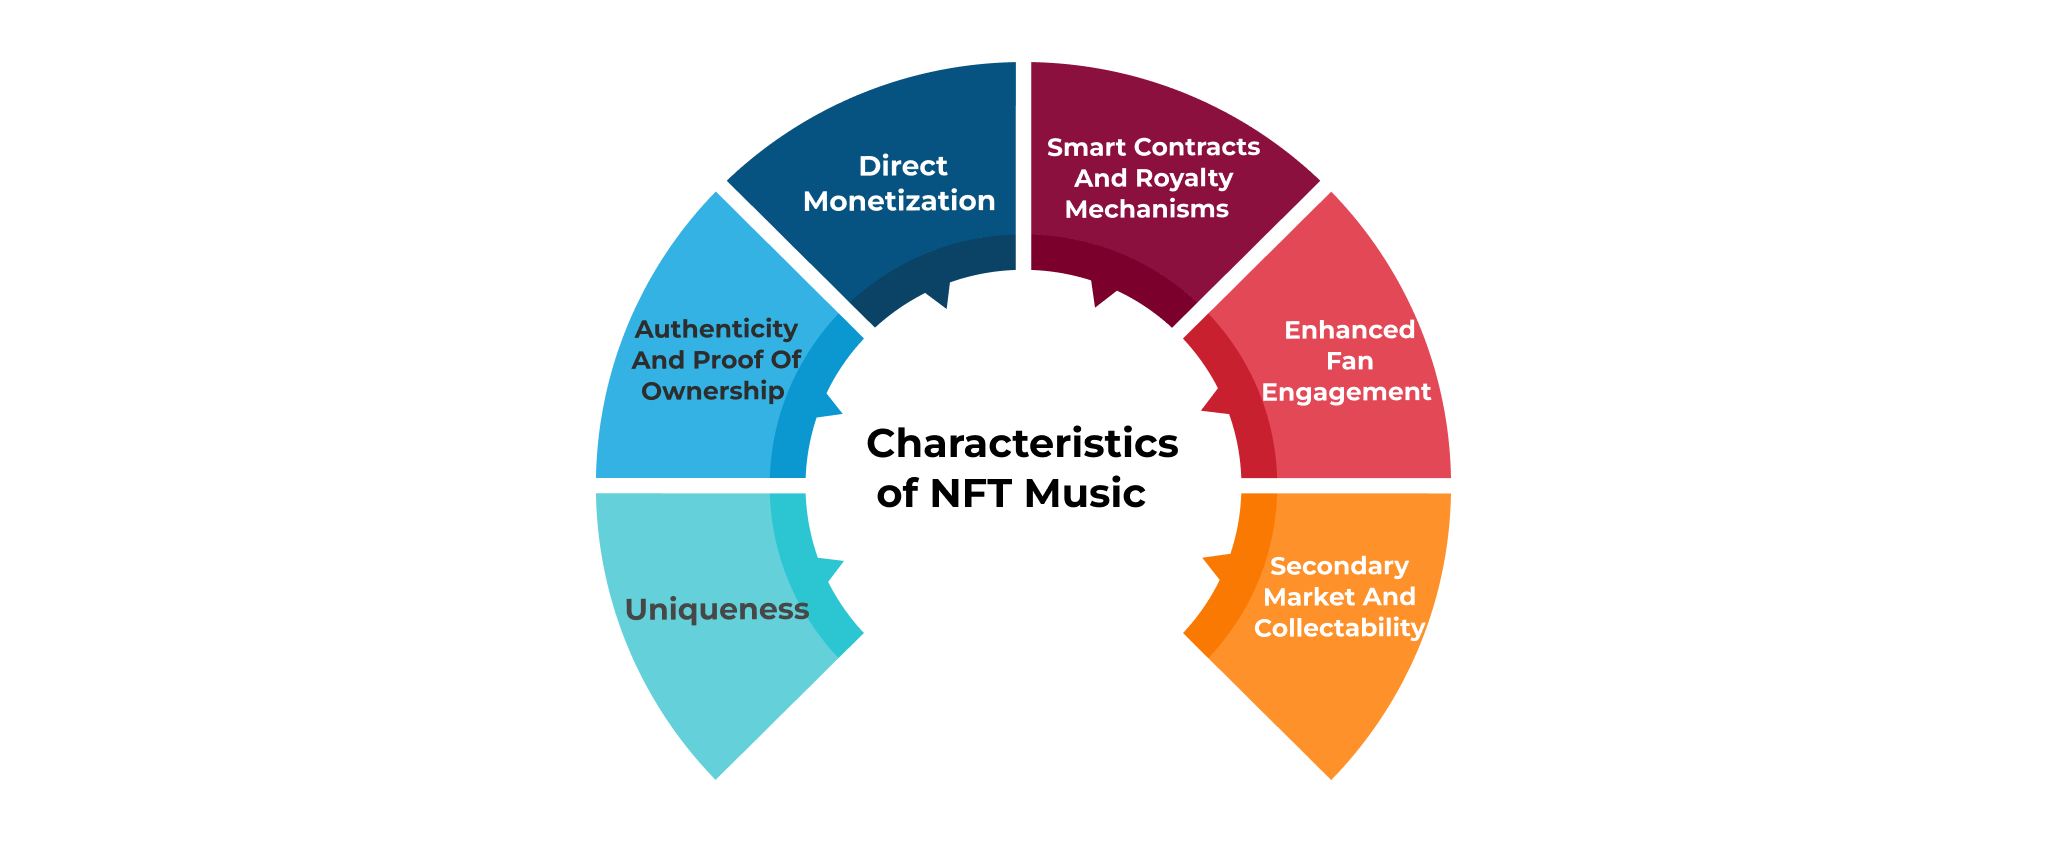 Key characteristics of NFT Music